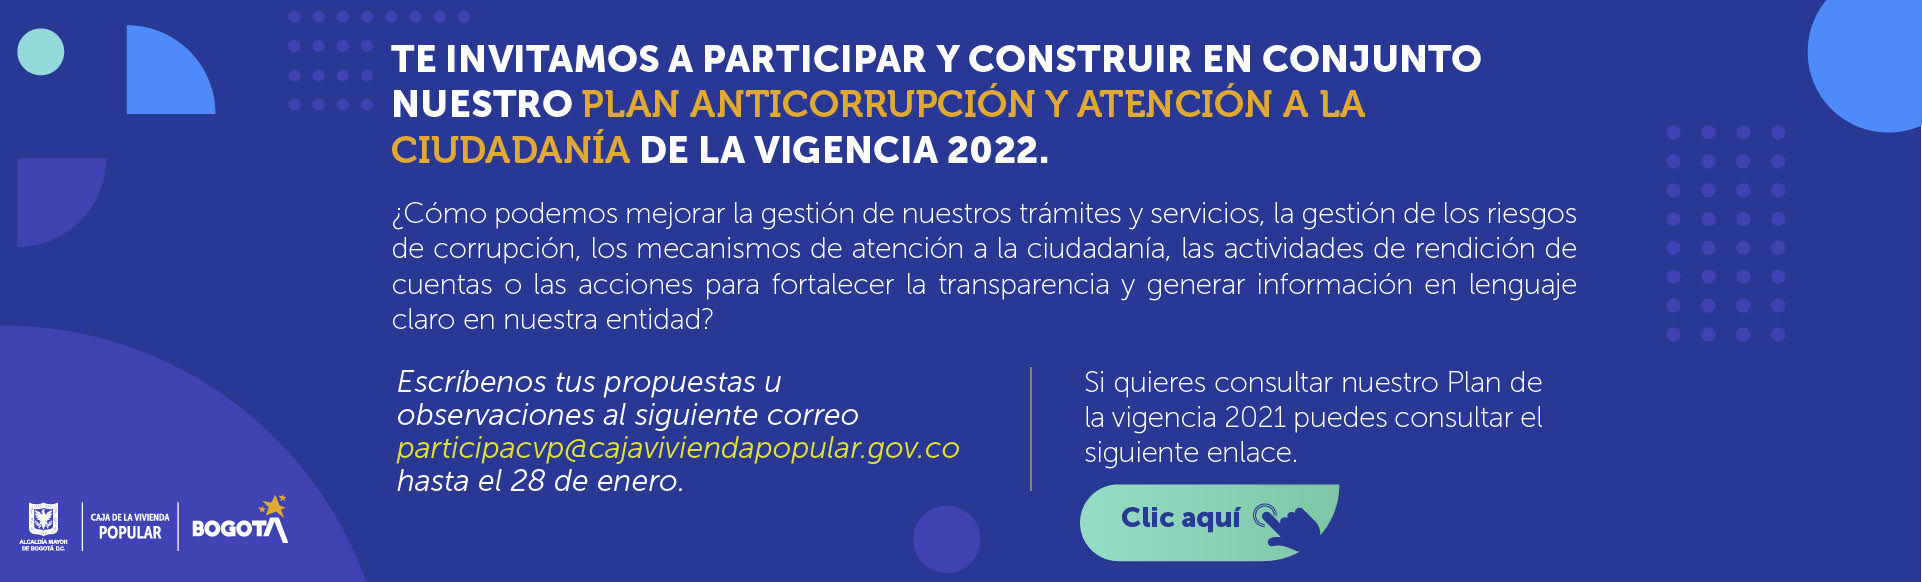 Te invitamos a participar y construir en conjunto nuestro Plan Anticorrupción y de Atención a la Ciudadanía Vigencia 2022